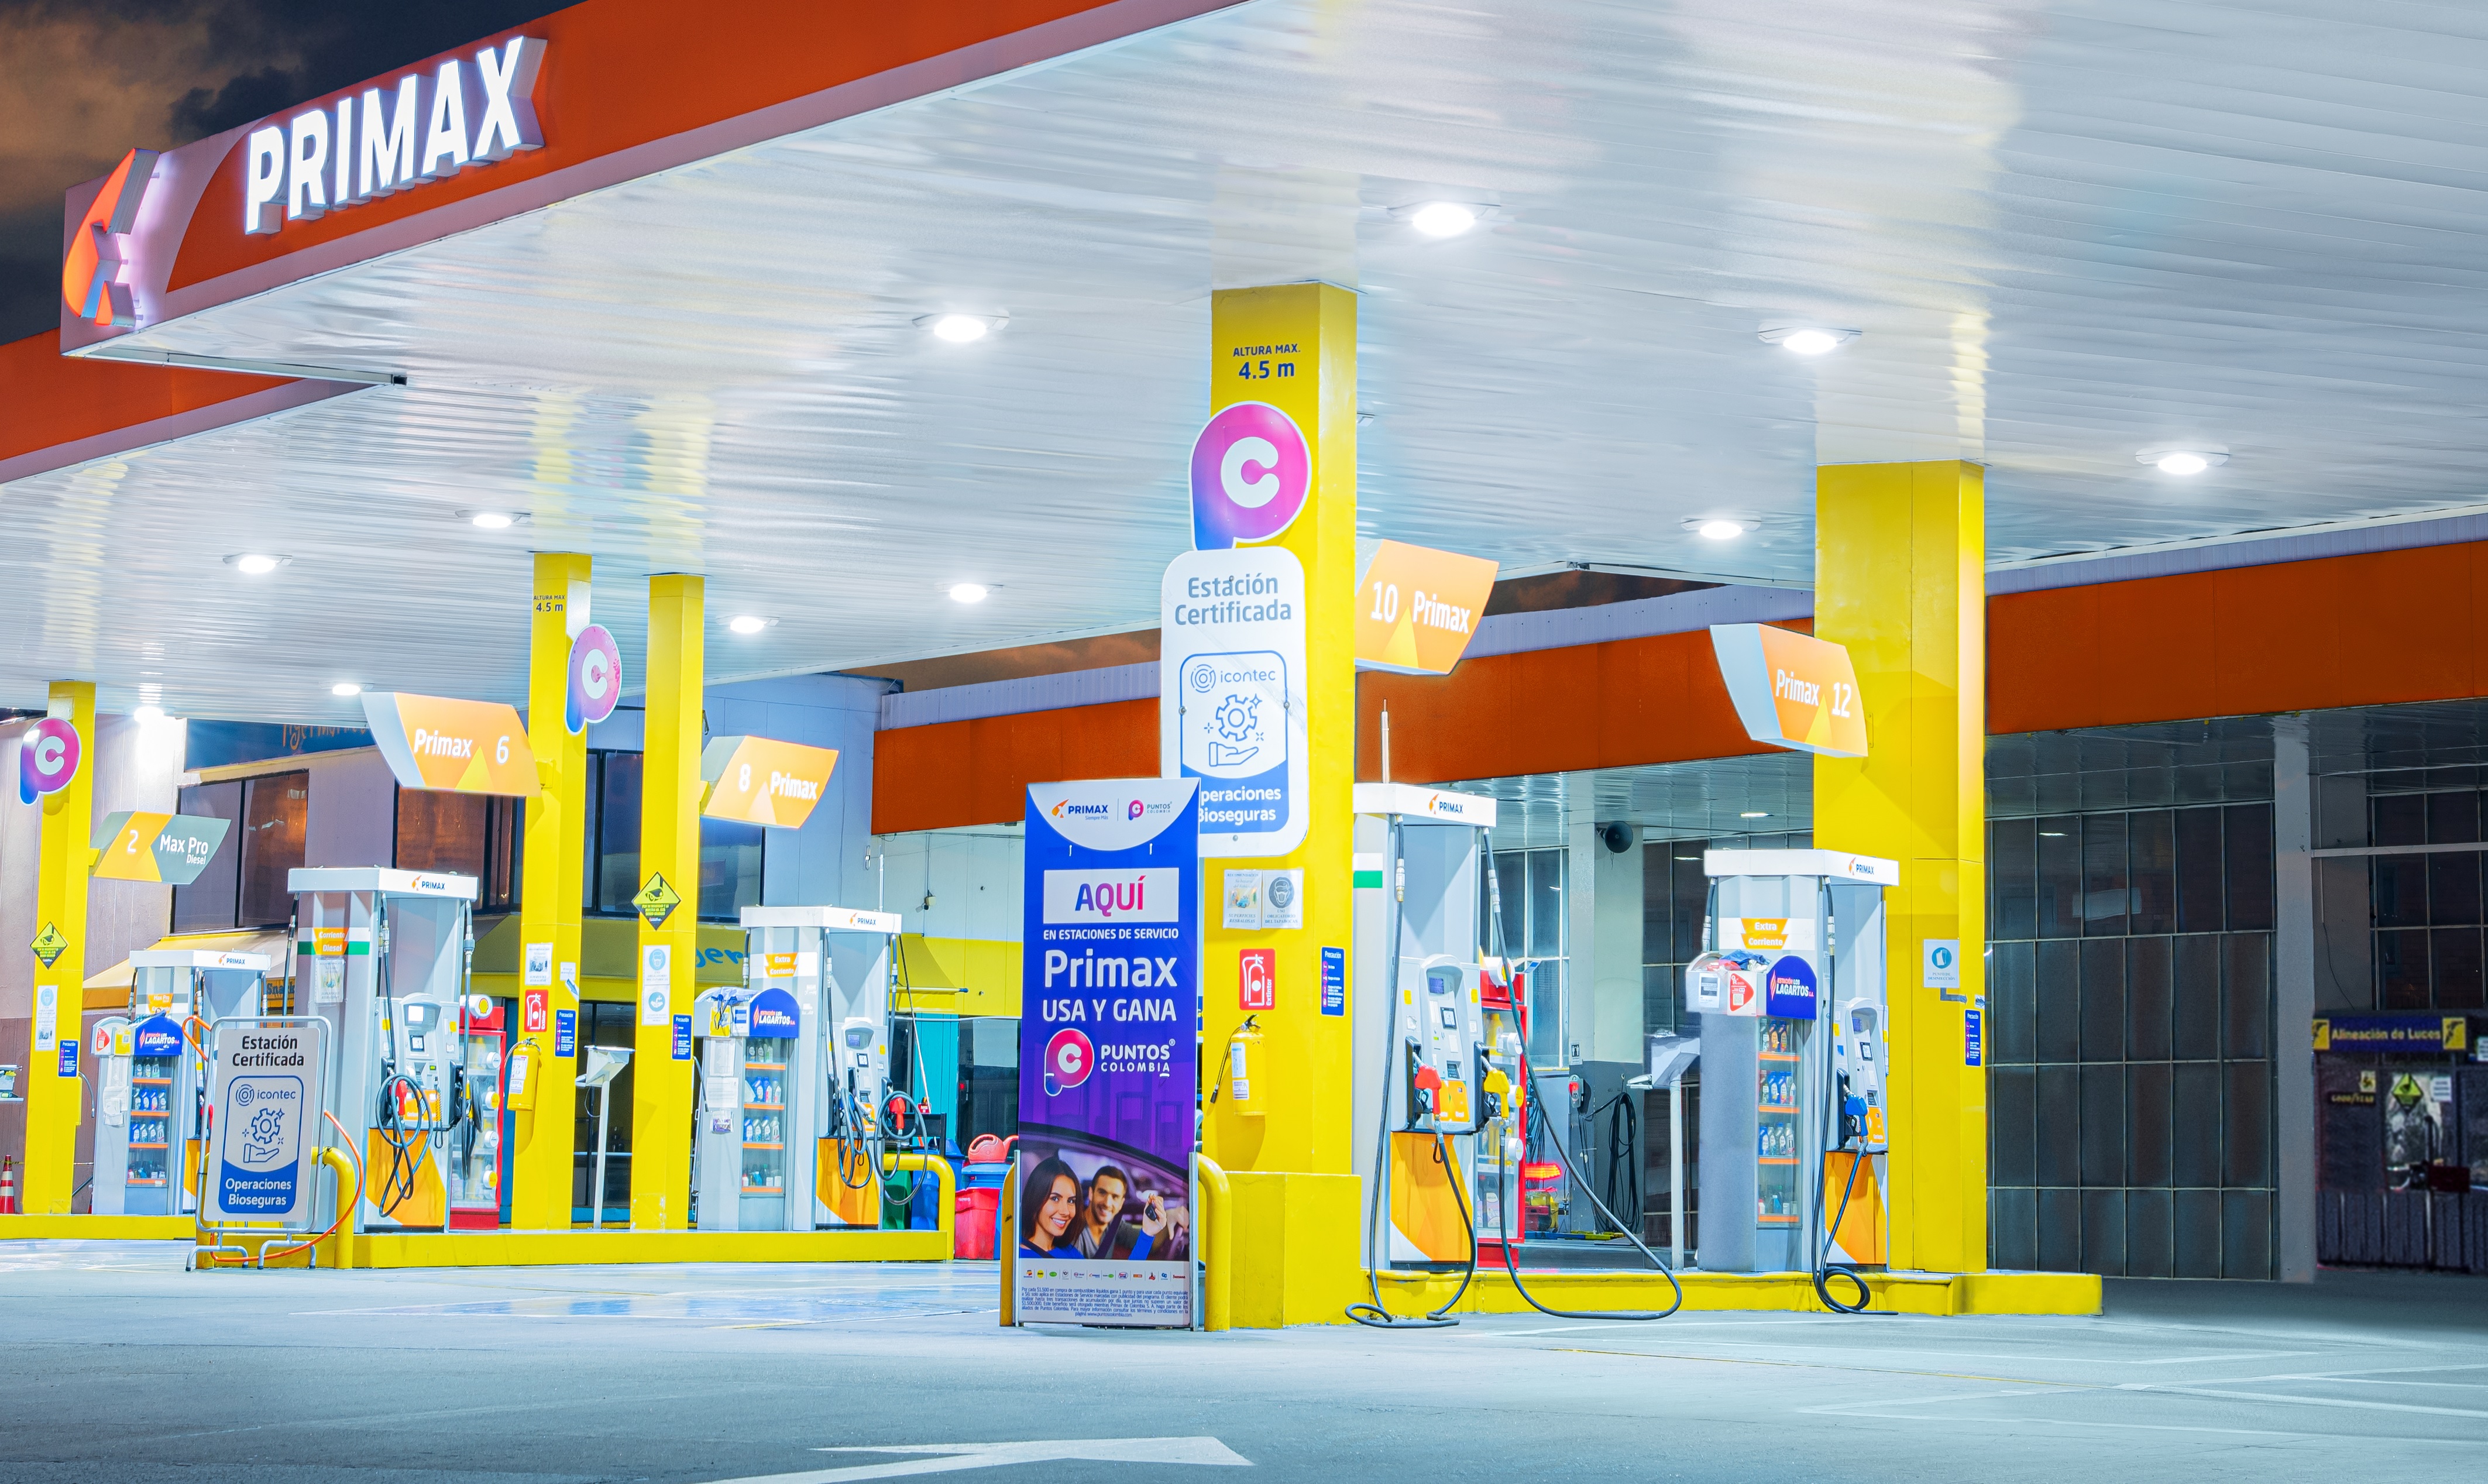 A través de ICONTEC, Primax certifica sus estaciones para garantizar la calidad y medida de sus combustibles